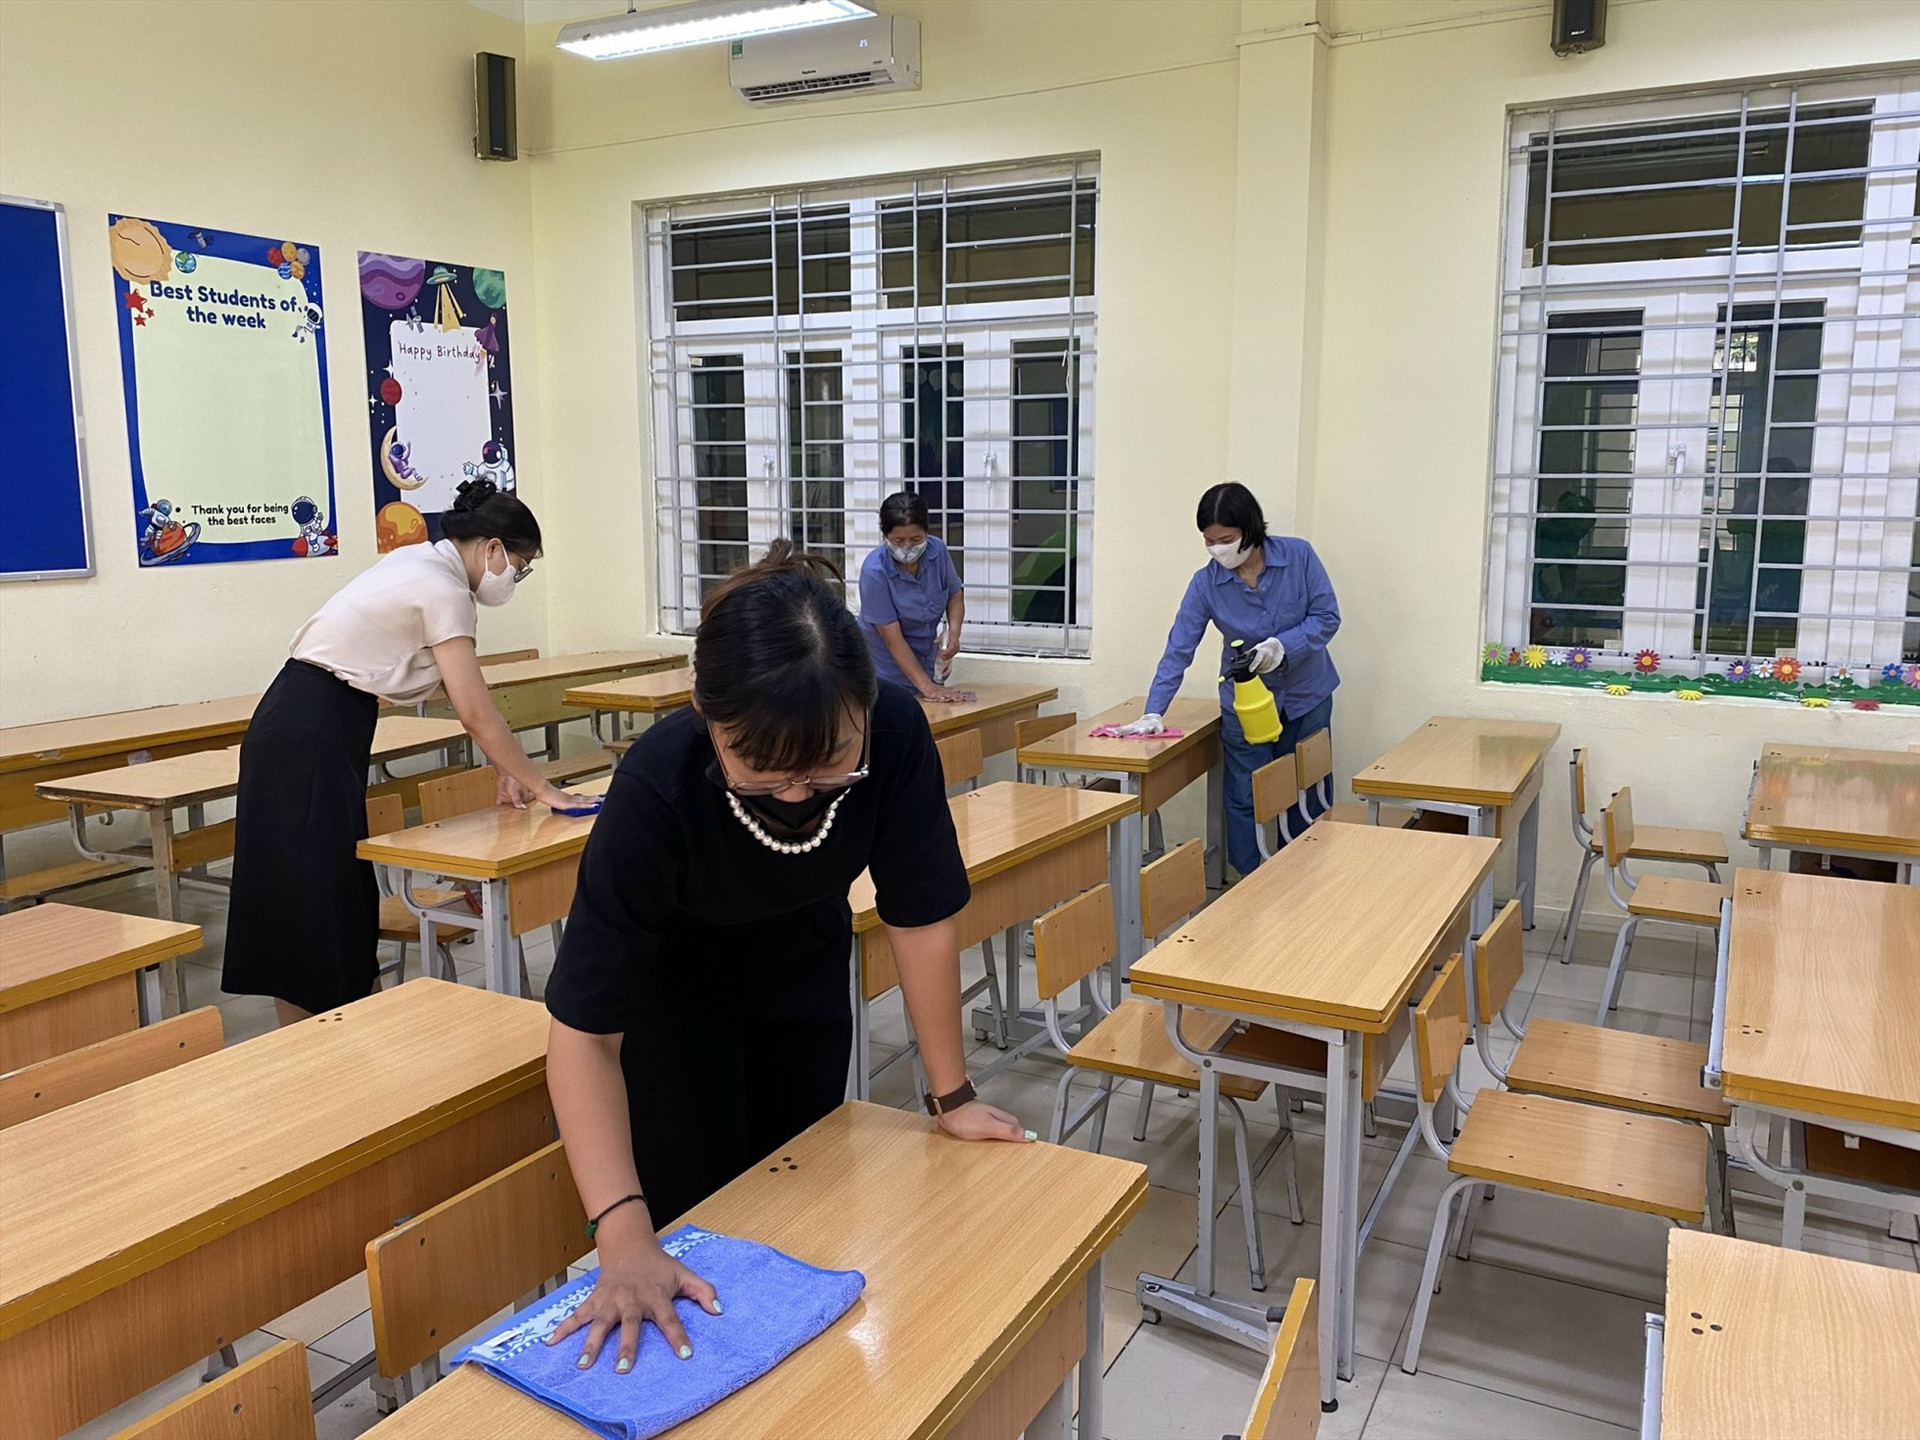 Tại Trường Tiểu học Vĩnh Tuy, dù là ngày nghỉ lễ, các thầy cô giáo có mặt tại trường từ sáng sớm, tất bật dọn dẹp bàn ghế, chuẩn bị chu đáo cho ngày lễ khai giảng sáng mai, 5.9